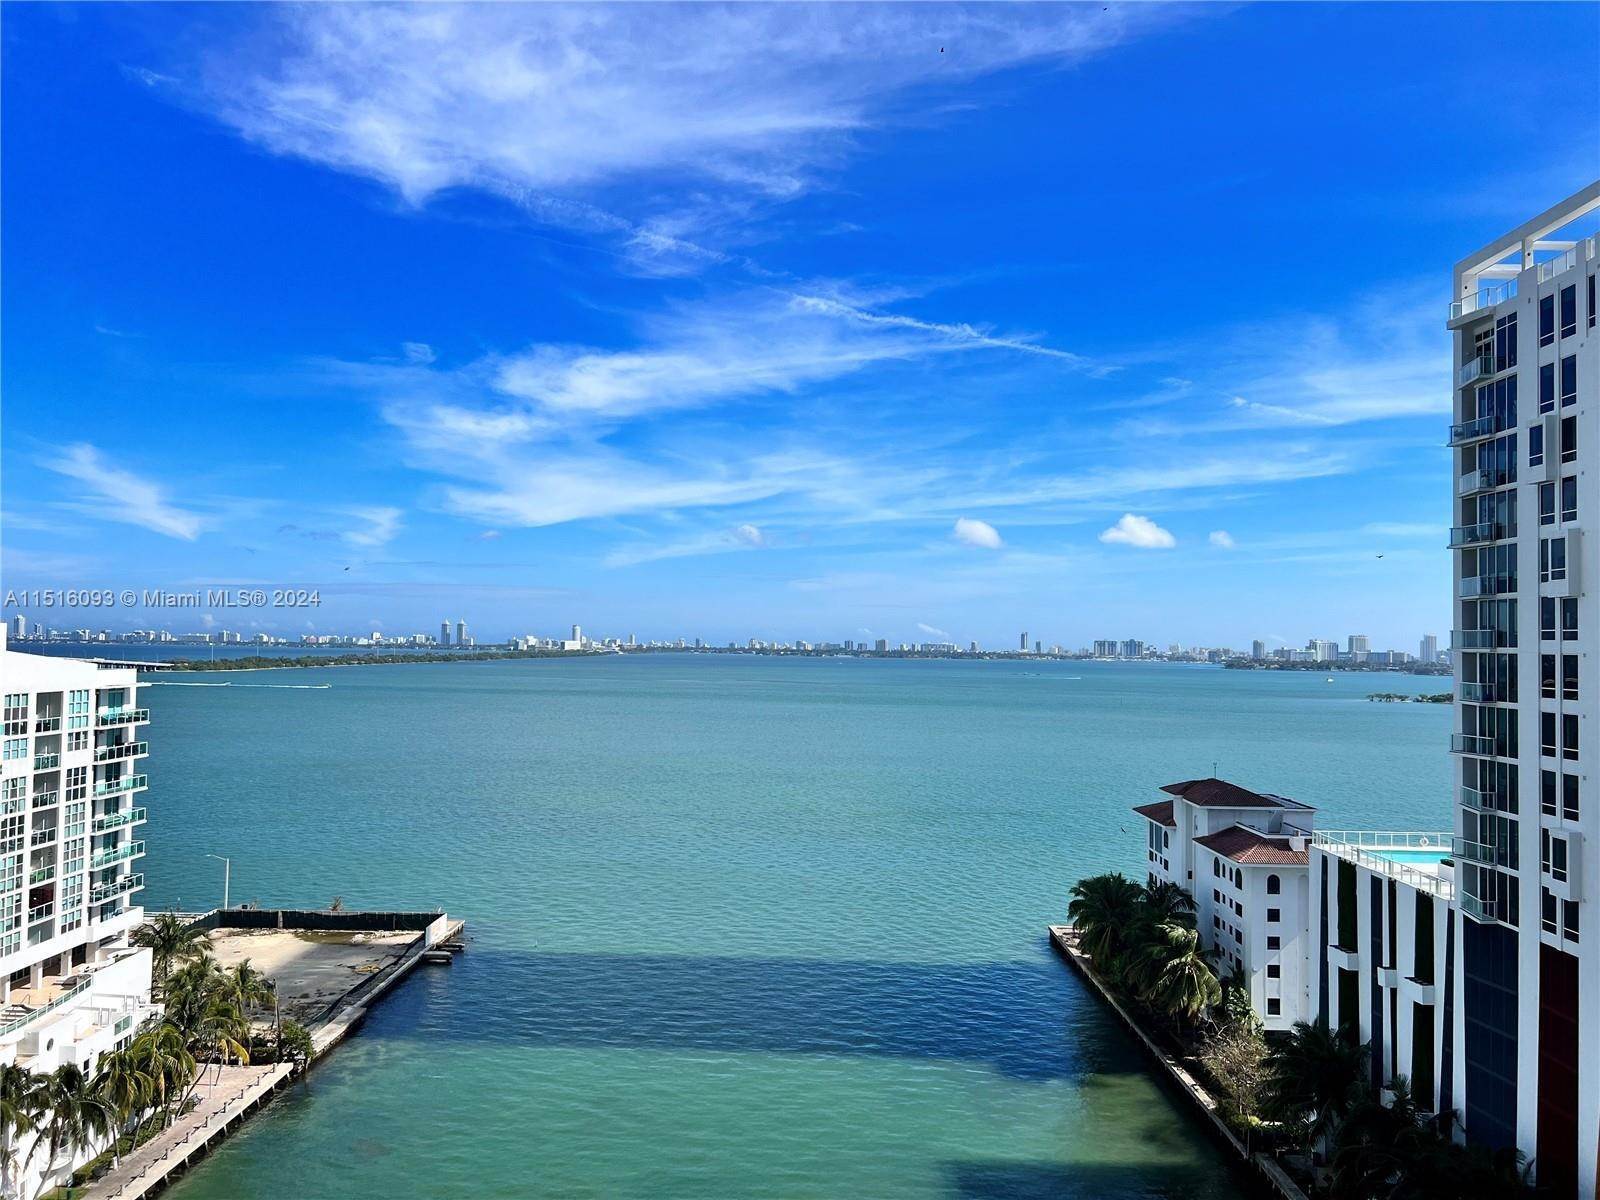 Condominiums at Edgewater, Miami, FL 33137